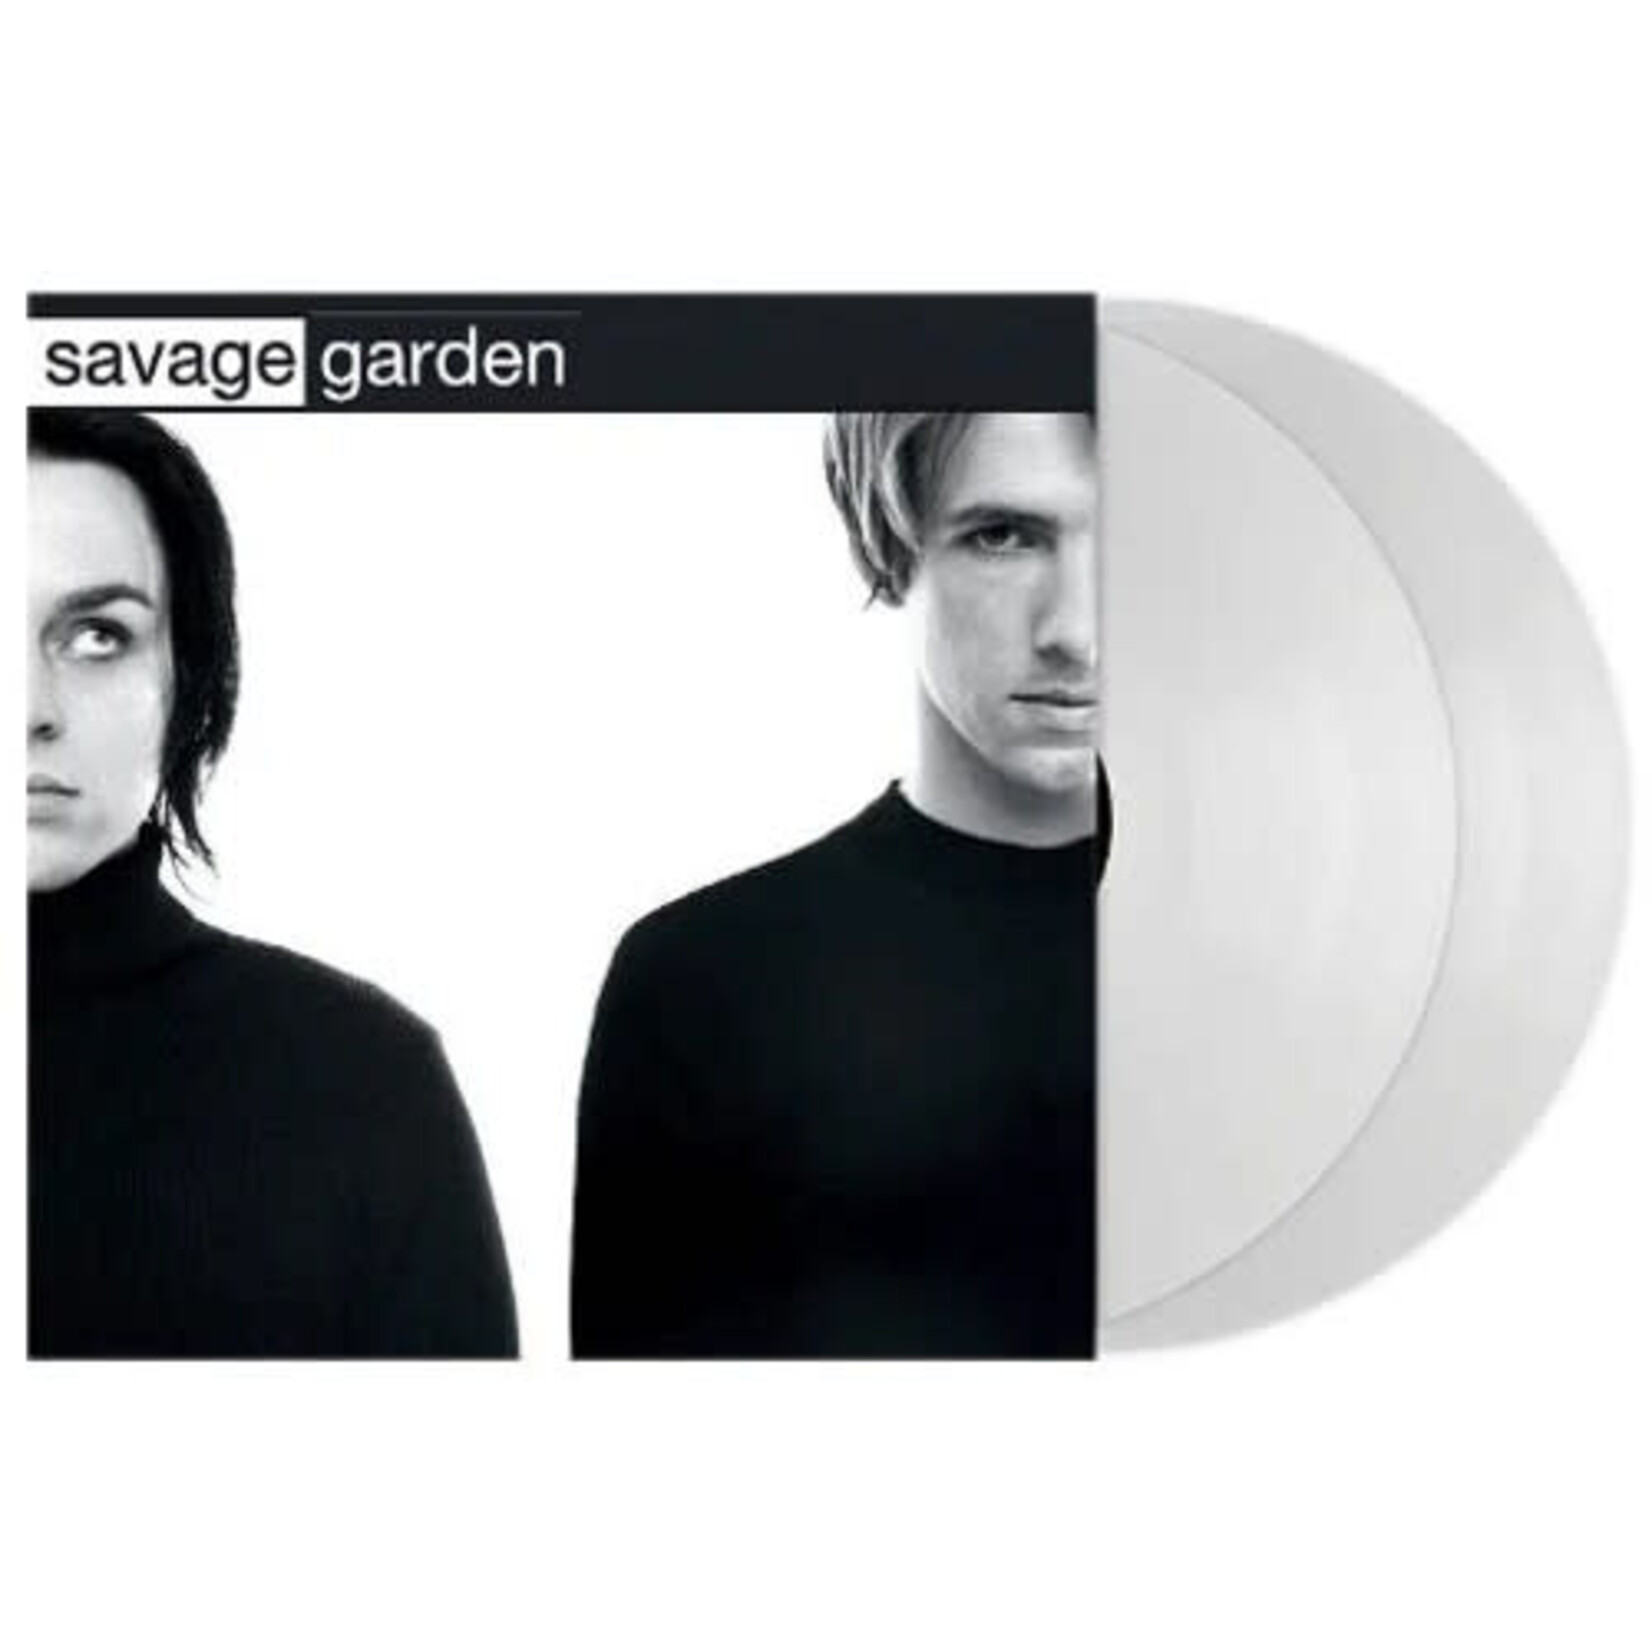 [New] Savage Garden - Savage Garden (2LP, 25th Anniversary Edition, white vinyl, original versions)